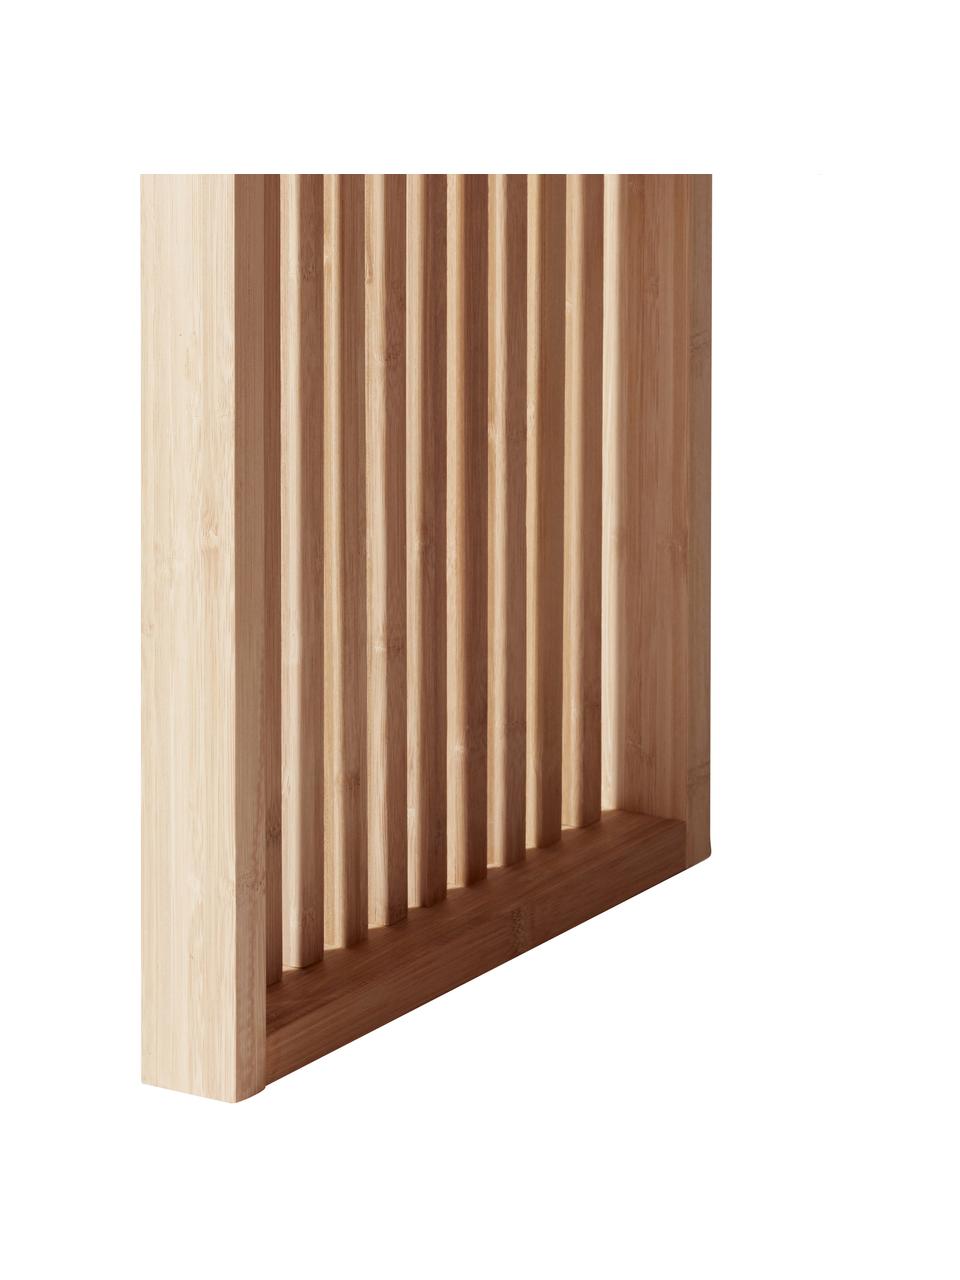 Stołek z drewna bambusowego Rib, Drewno bambusowe, piaskowane i olejowane, Jasny brązowy, S 45 x W 43 cm